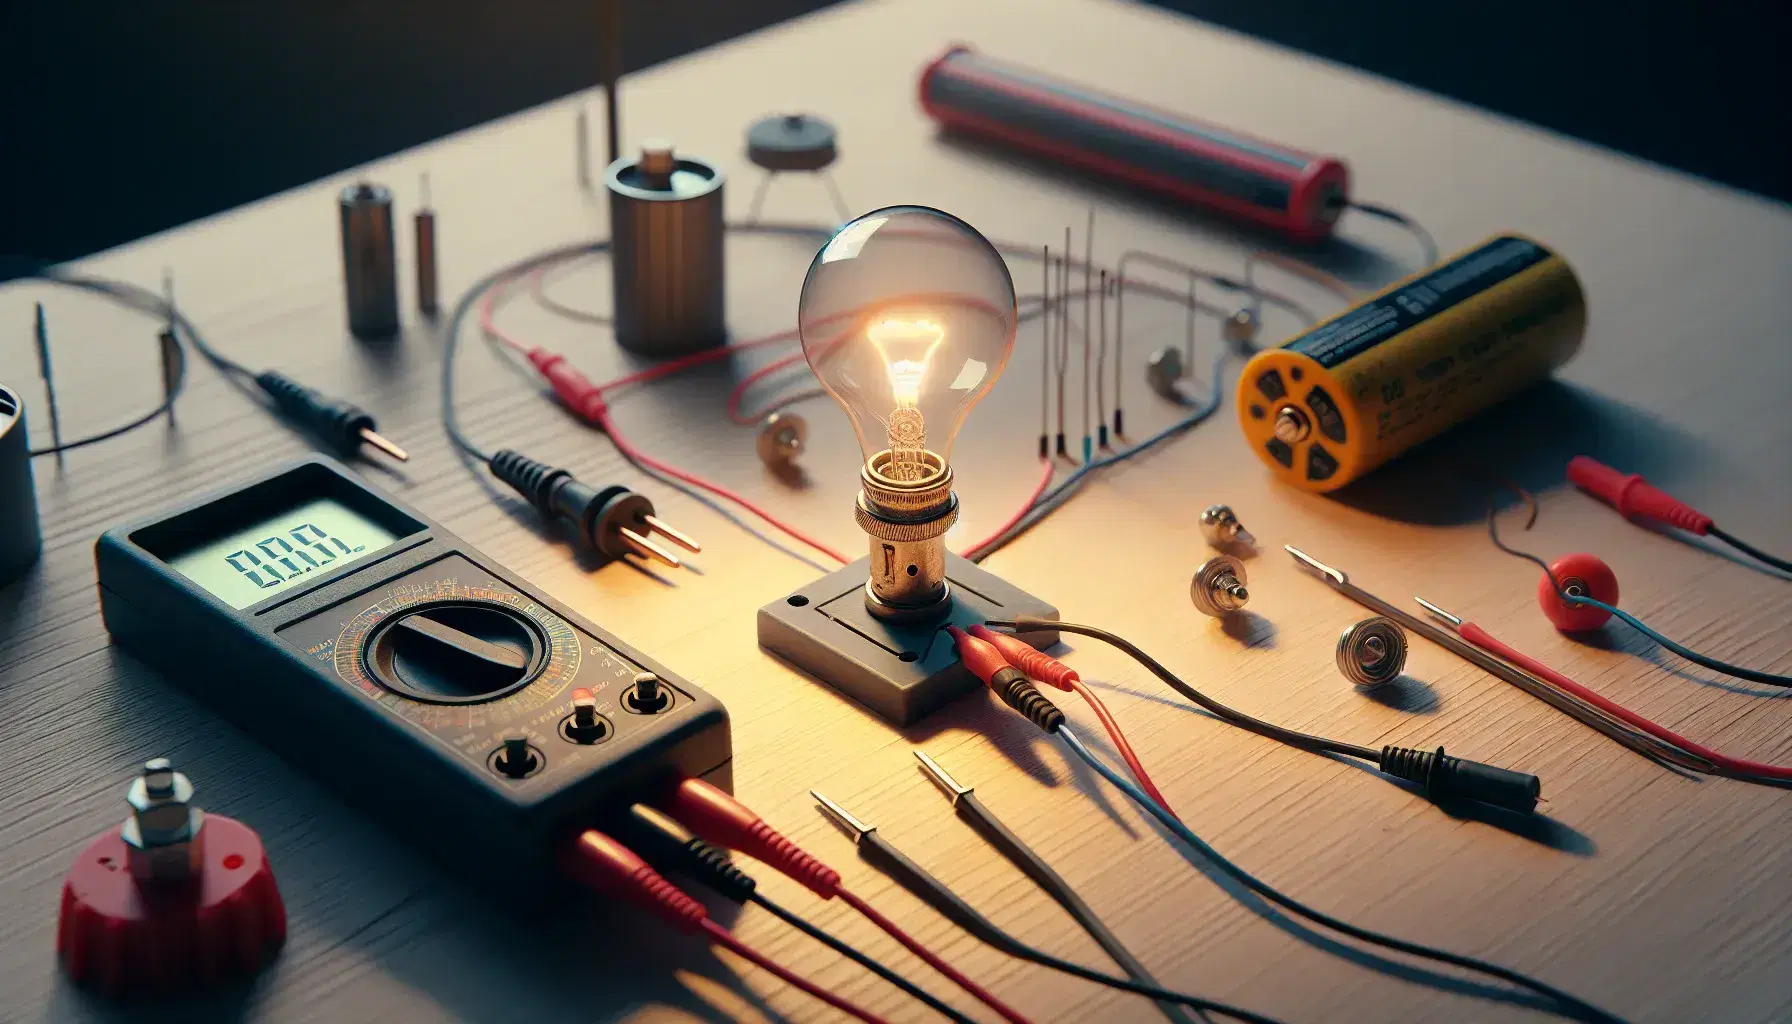 Circuito elettrico semplice con lampadina accesa collegata a batteria su tavolo in legno, multimeter analogico e motore elettrico non attivo.